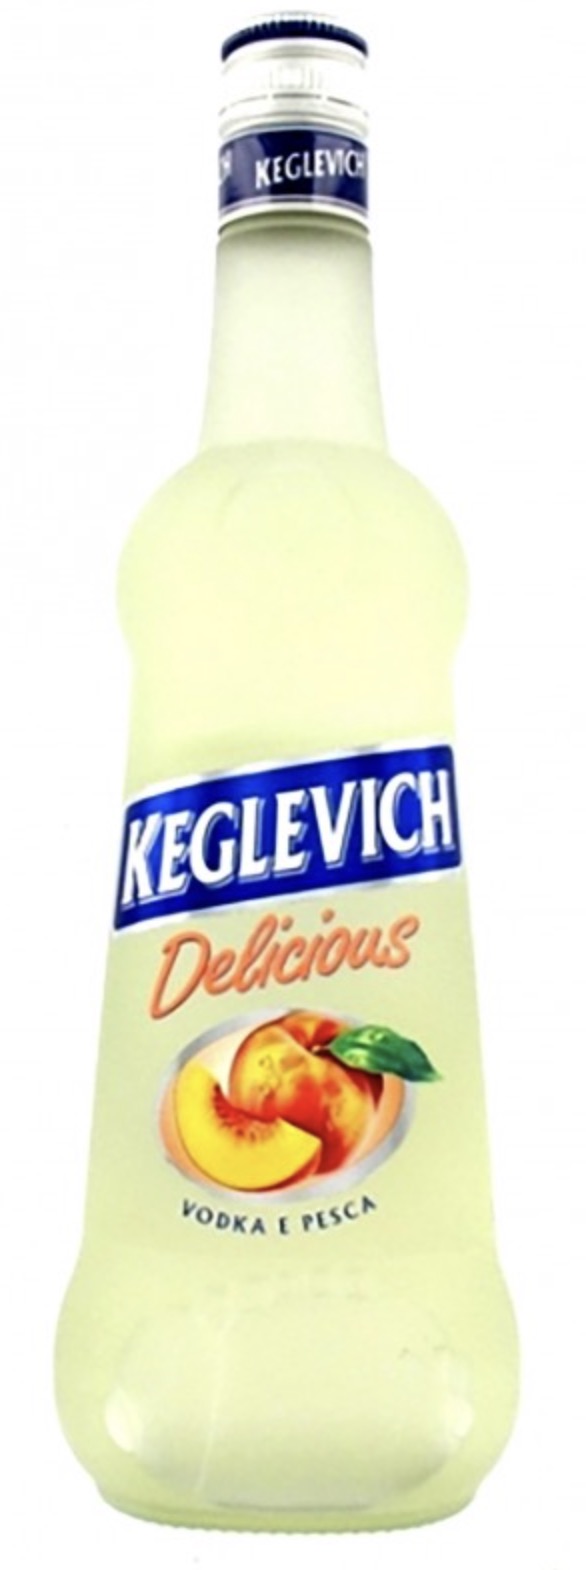 Keglevich Vodka Peche